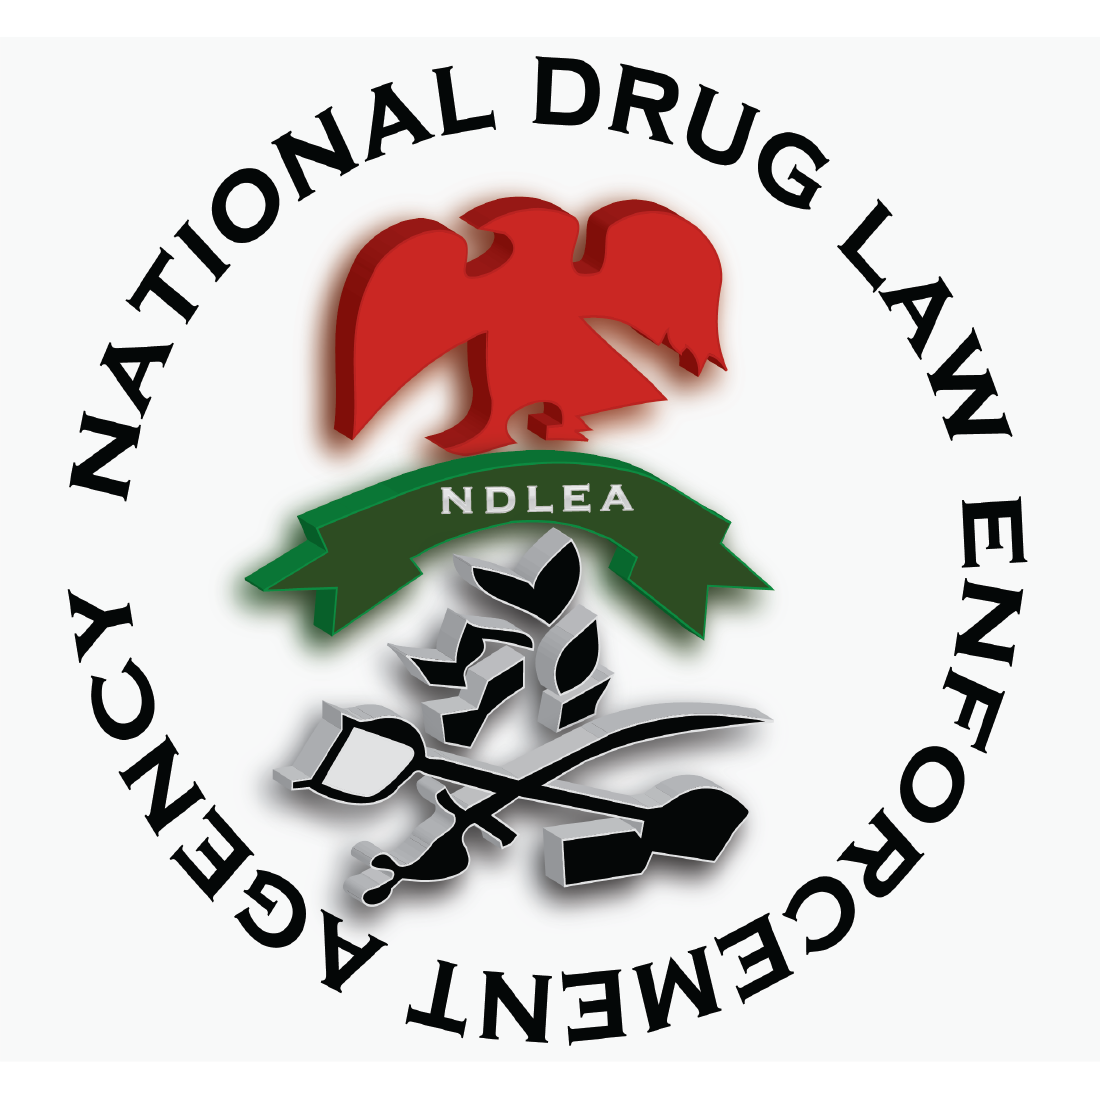 National drug Law (Logo) Design cover image.